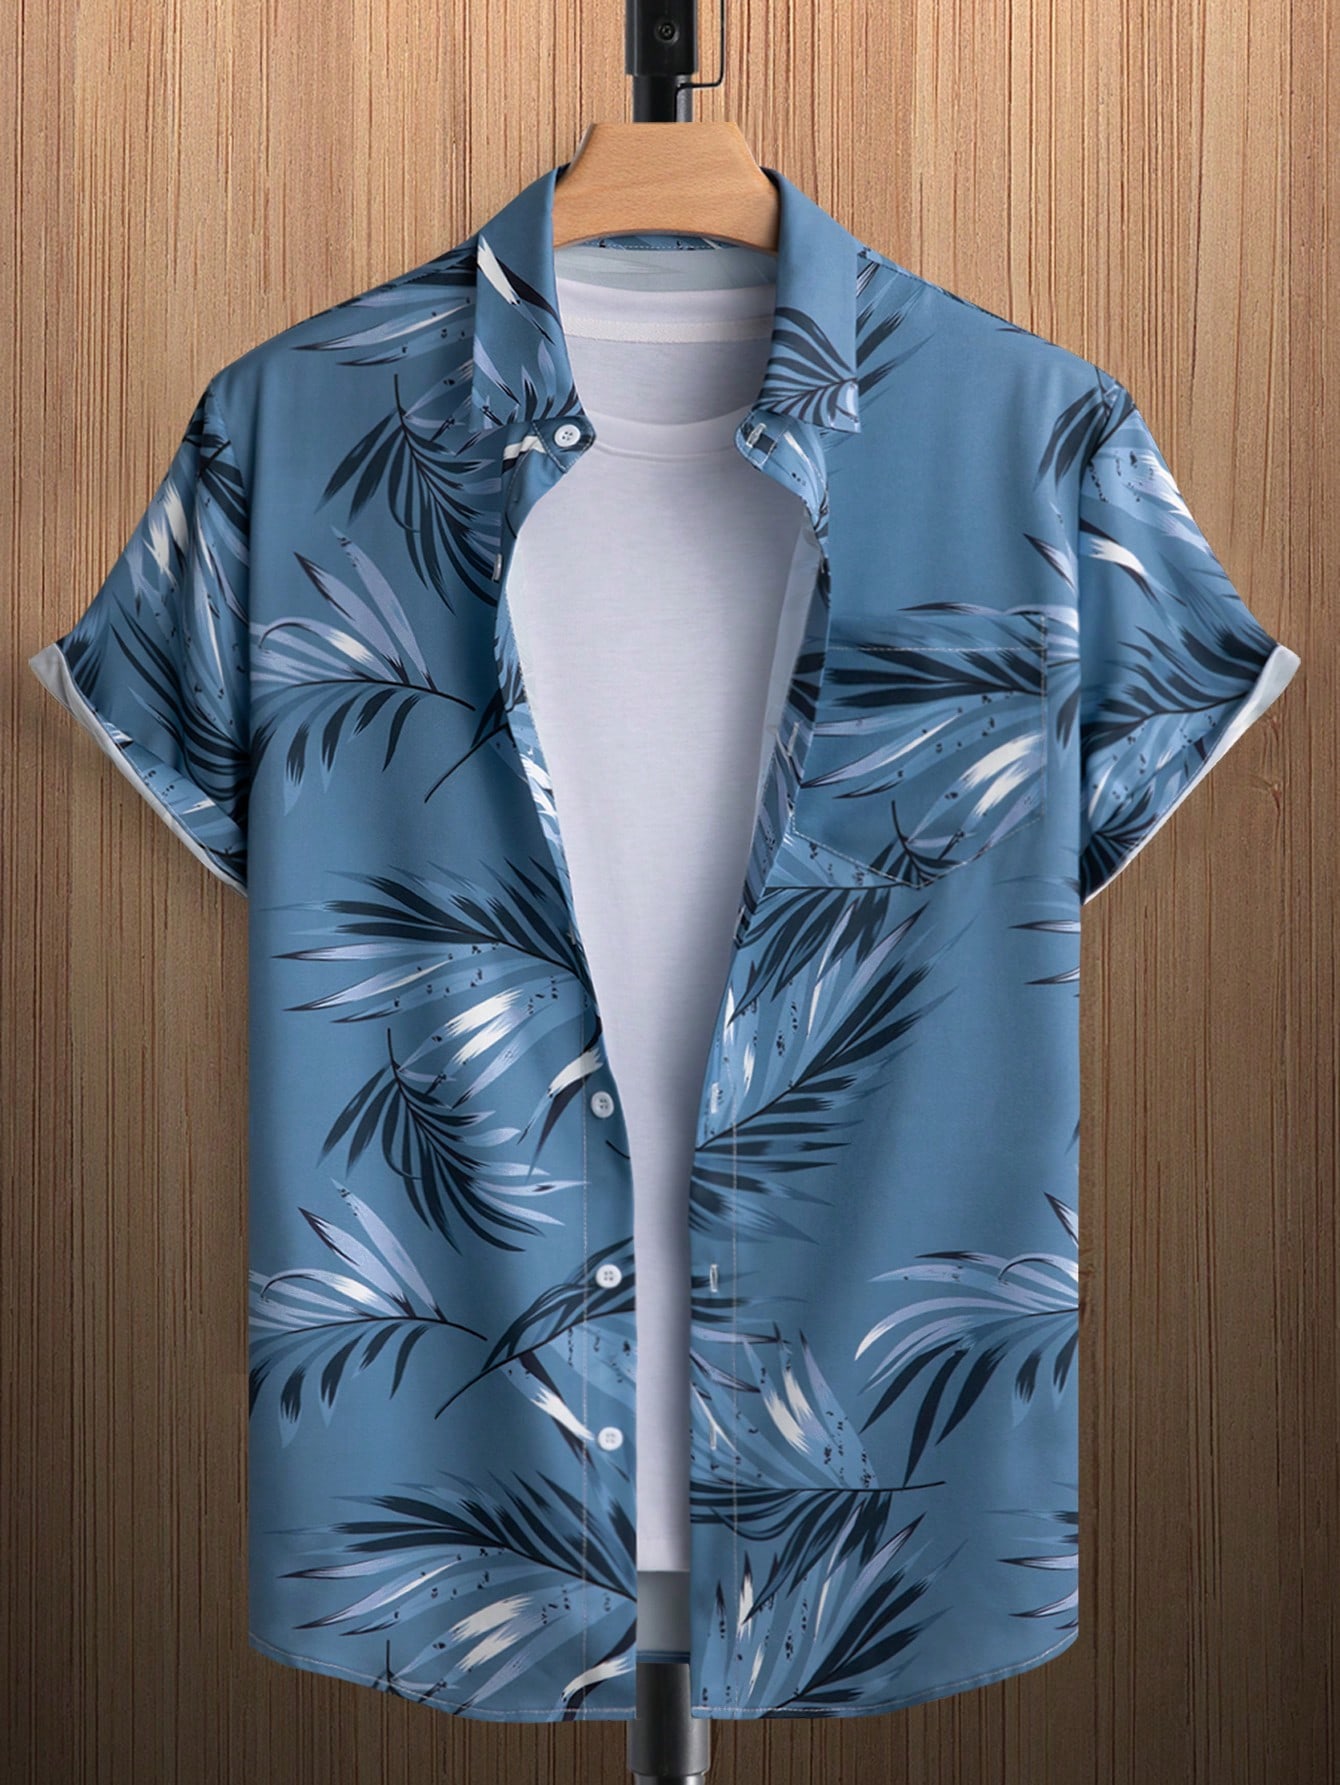 Мужская рубашка с короткими рукавами и принтом листьев на пуговицах Manfinity RSRT, пыльный синий